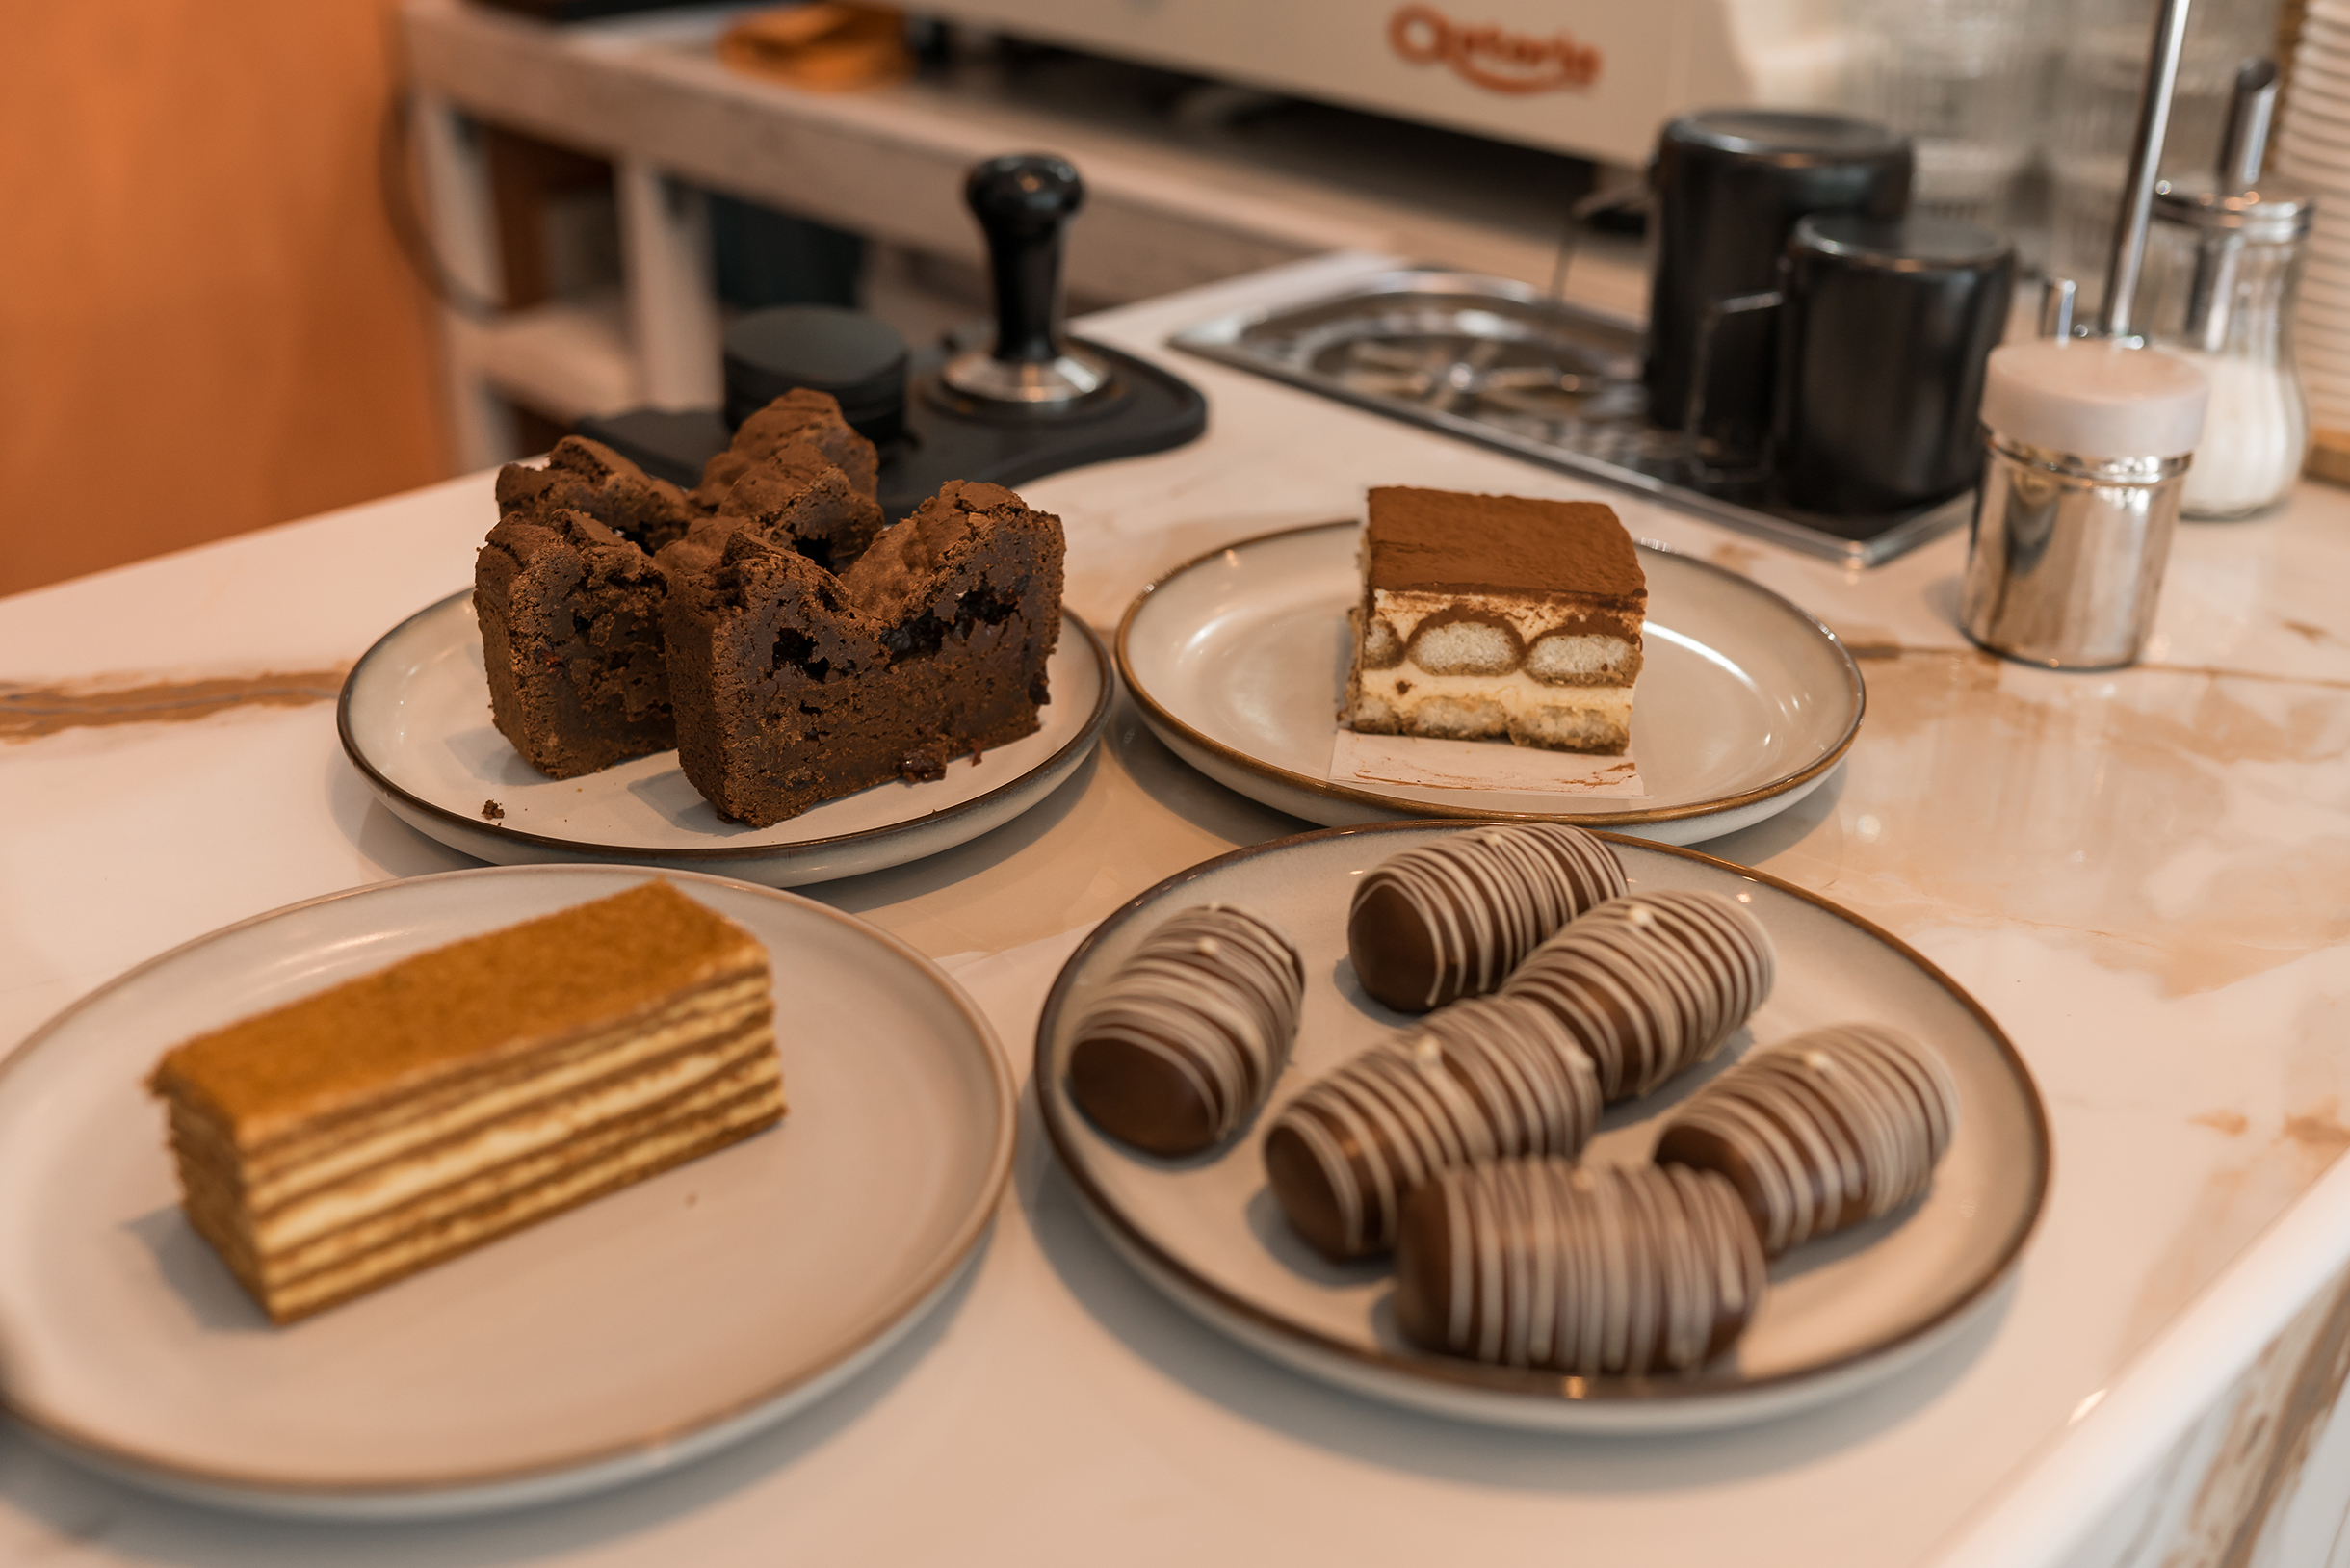 Мы ранжируем десерты так, чтобы в каждом ценовом сегменте было минимум по одному варианту. Всегда в наличии есть что⁠-⁠то недорогое за 2 € и премиальный десерт за 6 €